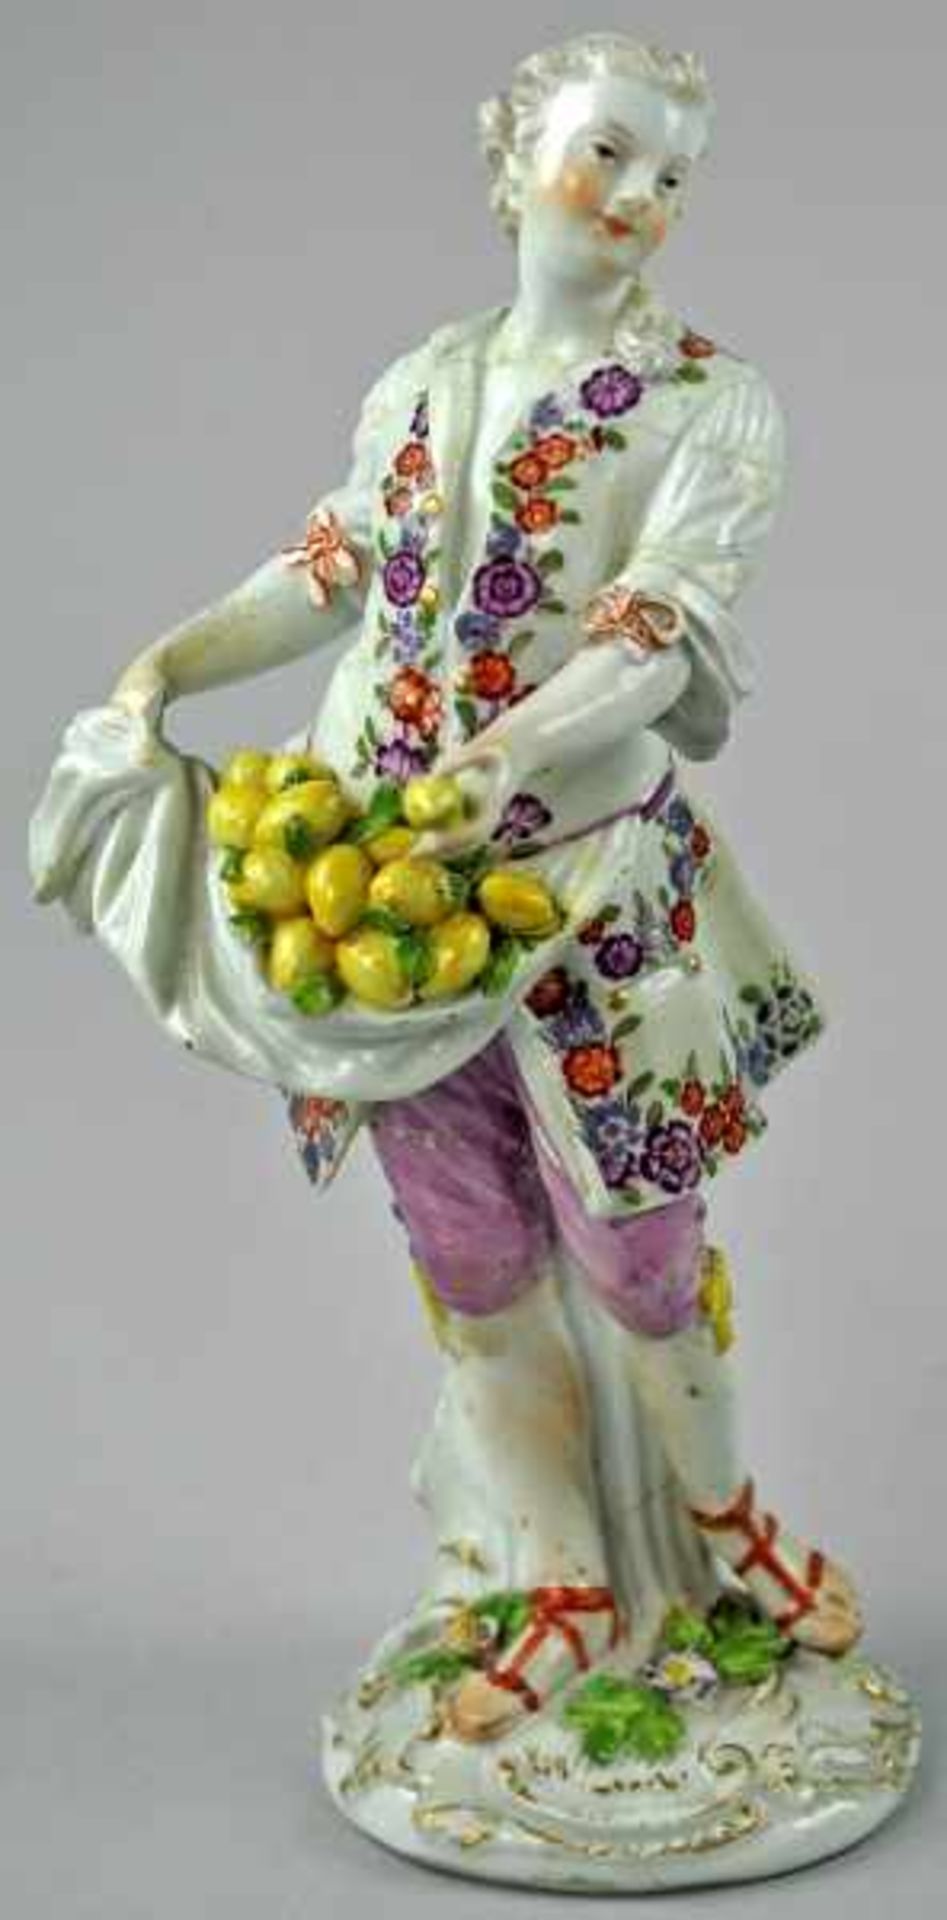 ZITRONEVERKÄUFER junger Mann mit blütenverziertem Gehrock, in der rechten Hand ein Tuch mit Zitronen